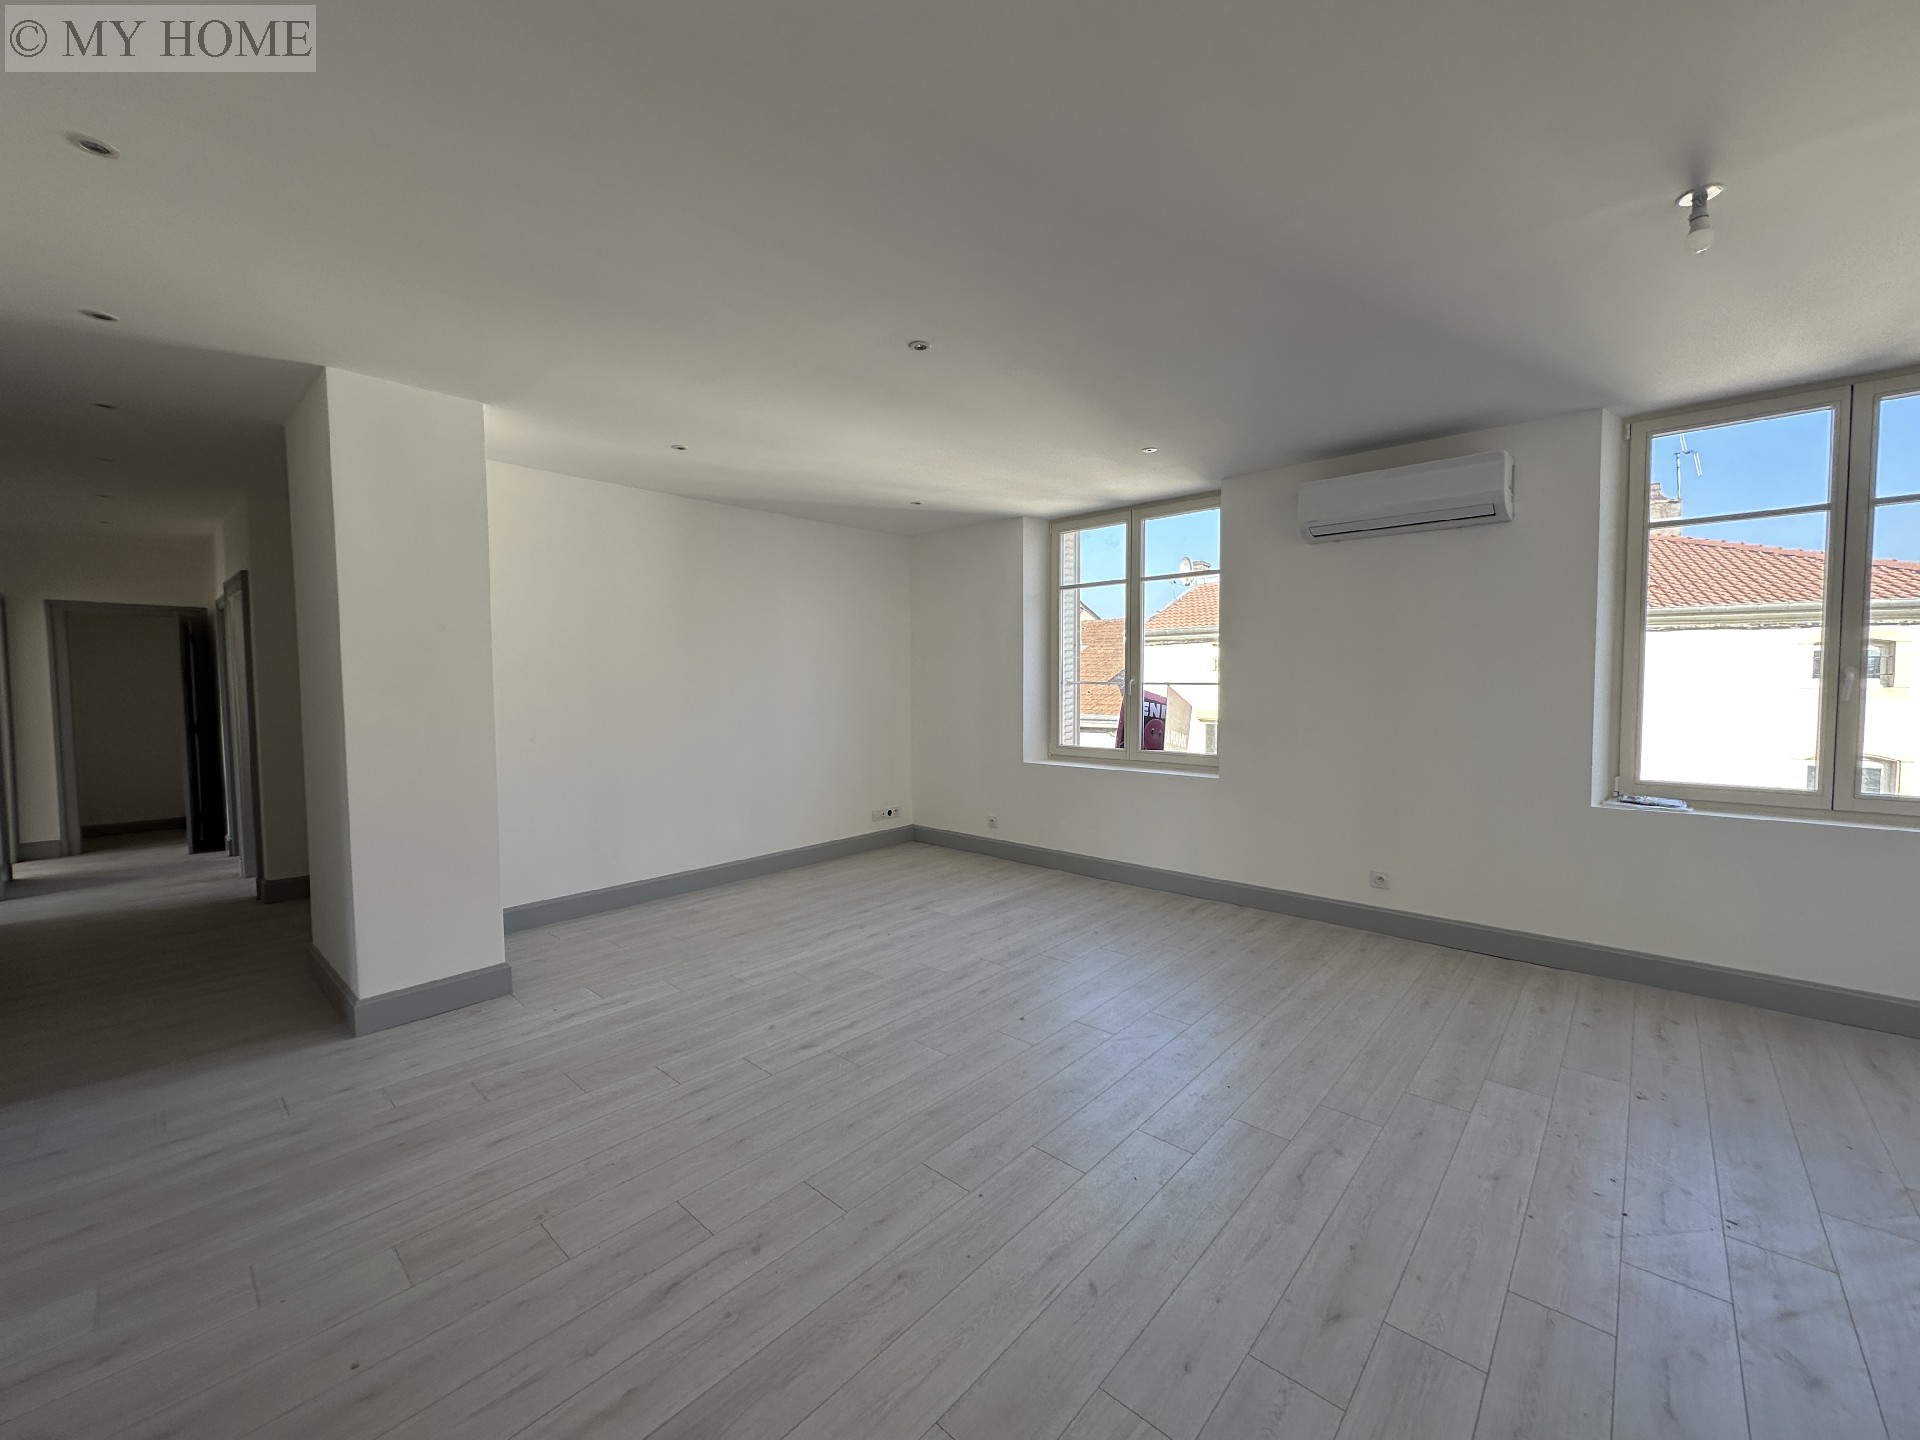 Vente appartement - TOUL 103 m², 4 pièces